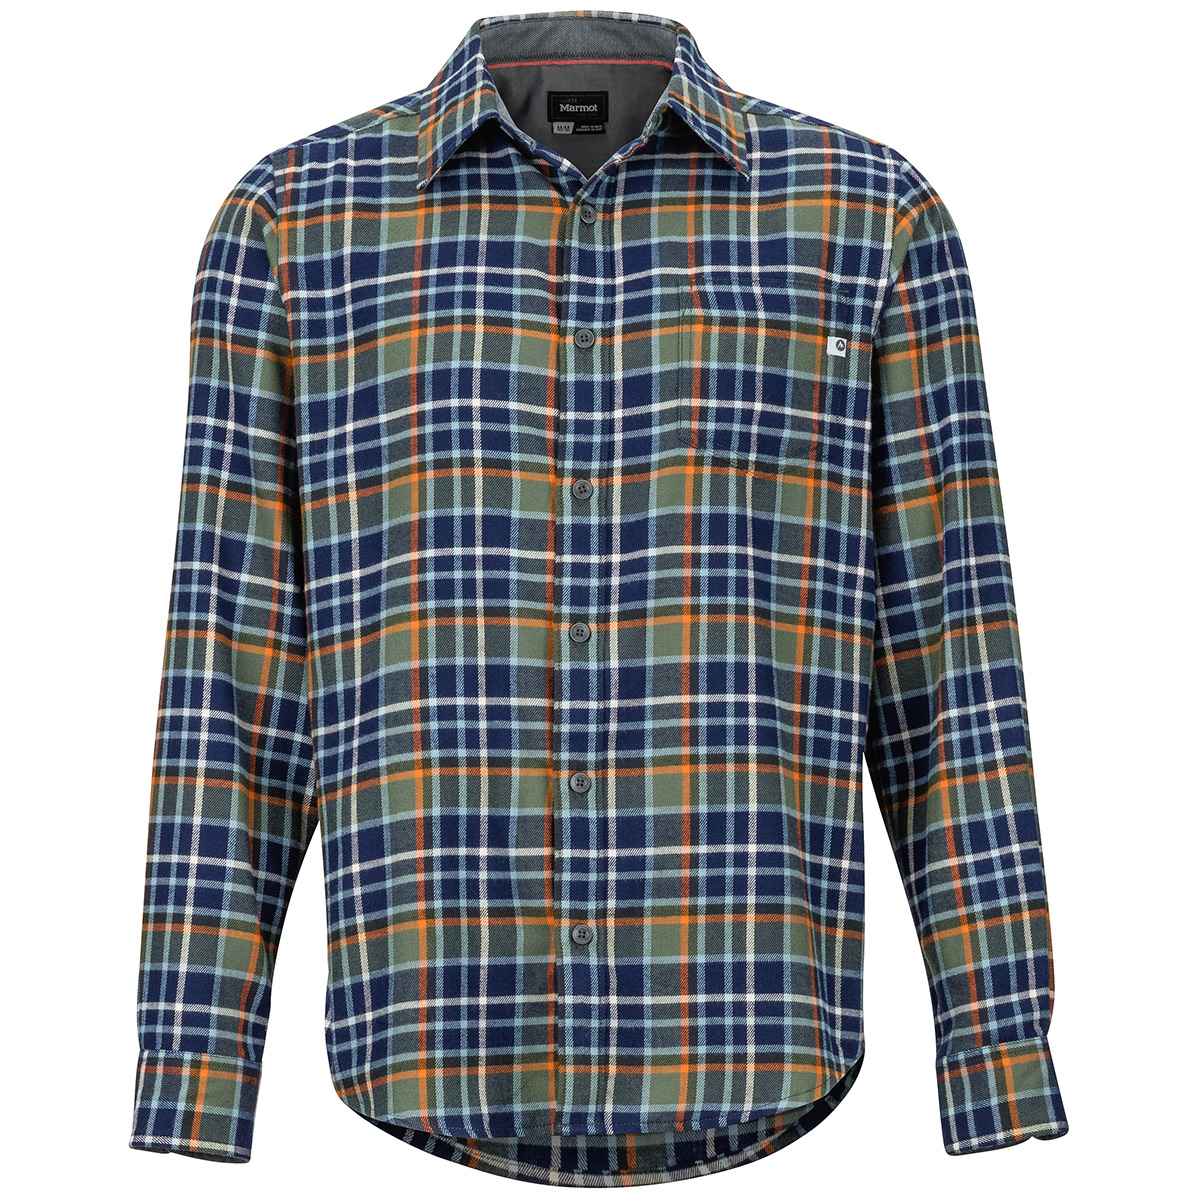 Marmot Men's Fairfax Flannel Long-Sleeve Shirt - Green, XL